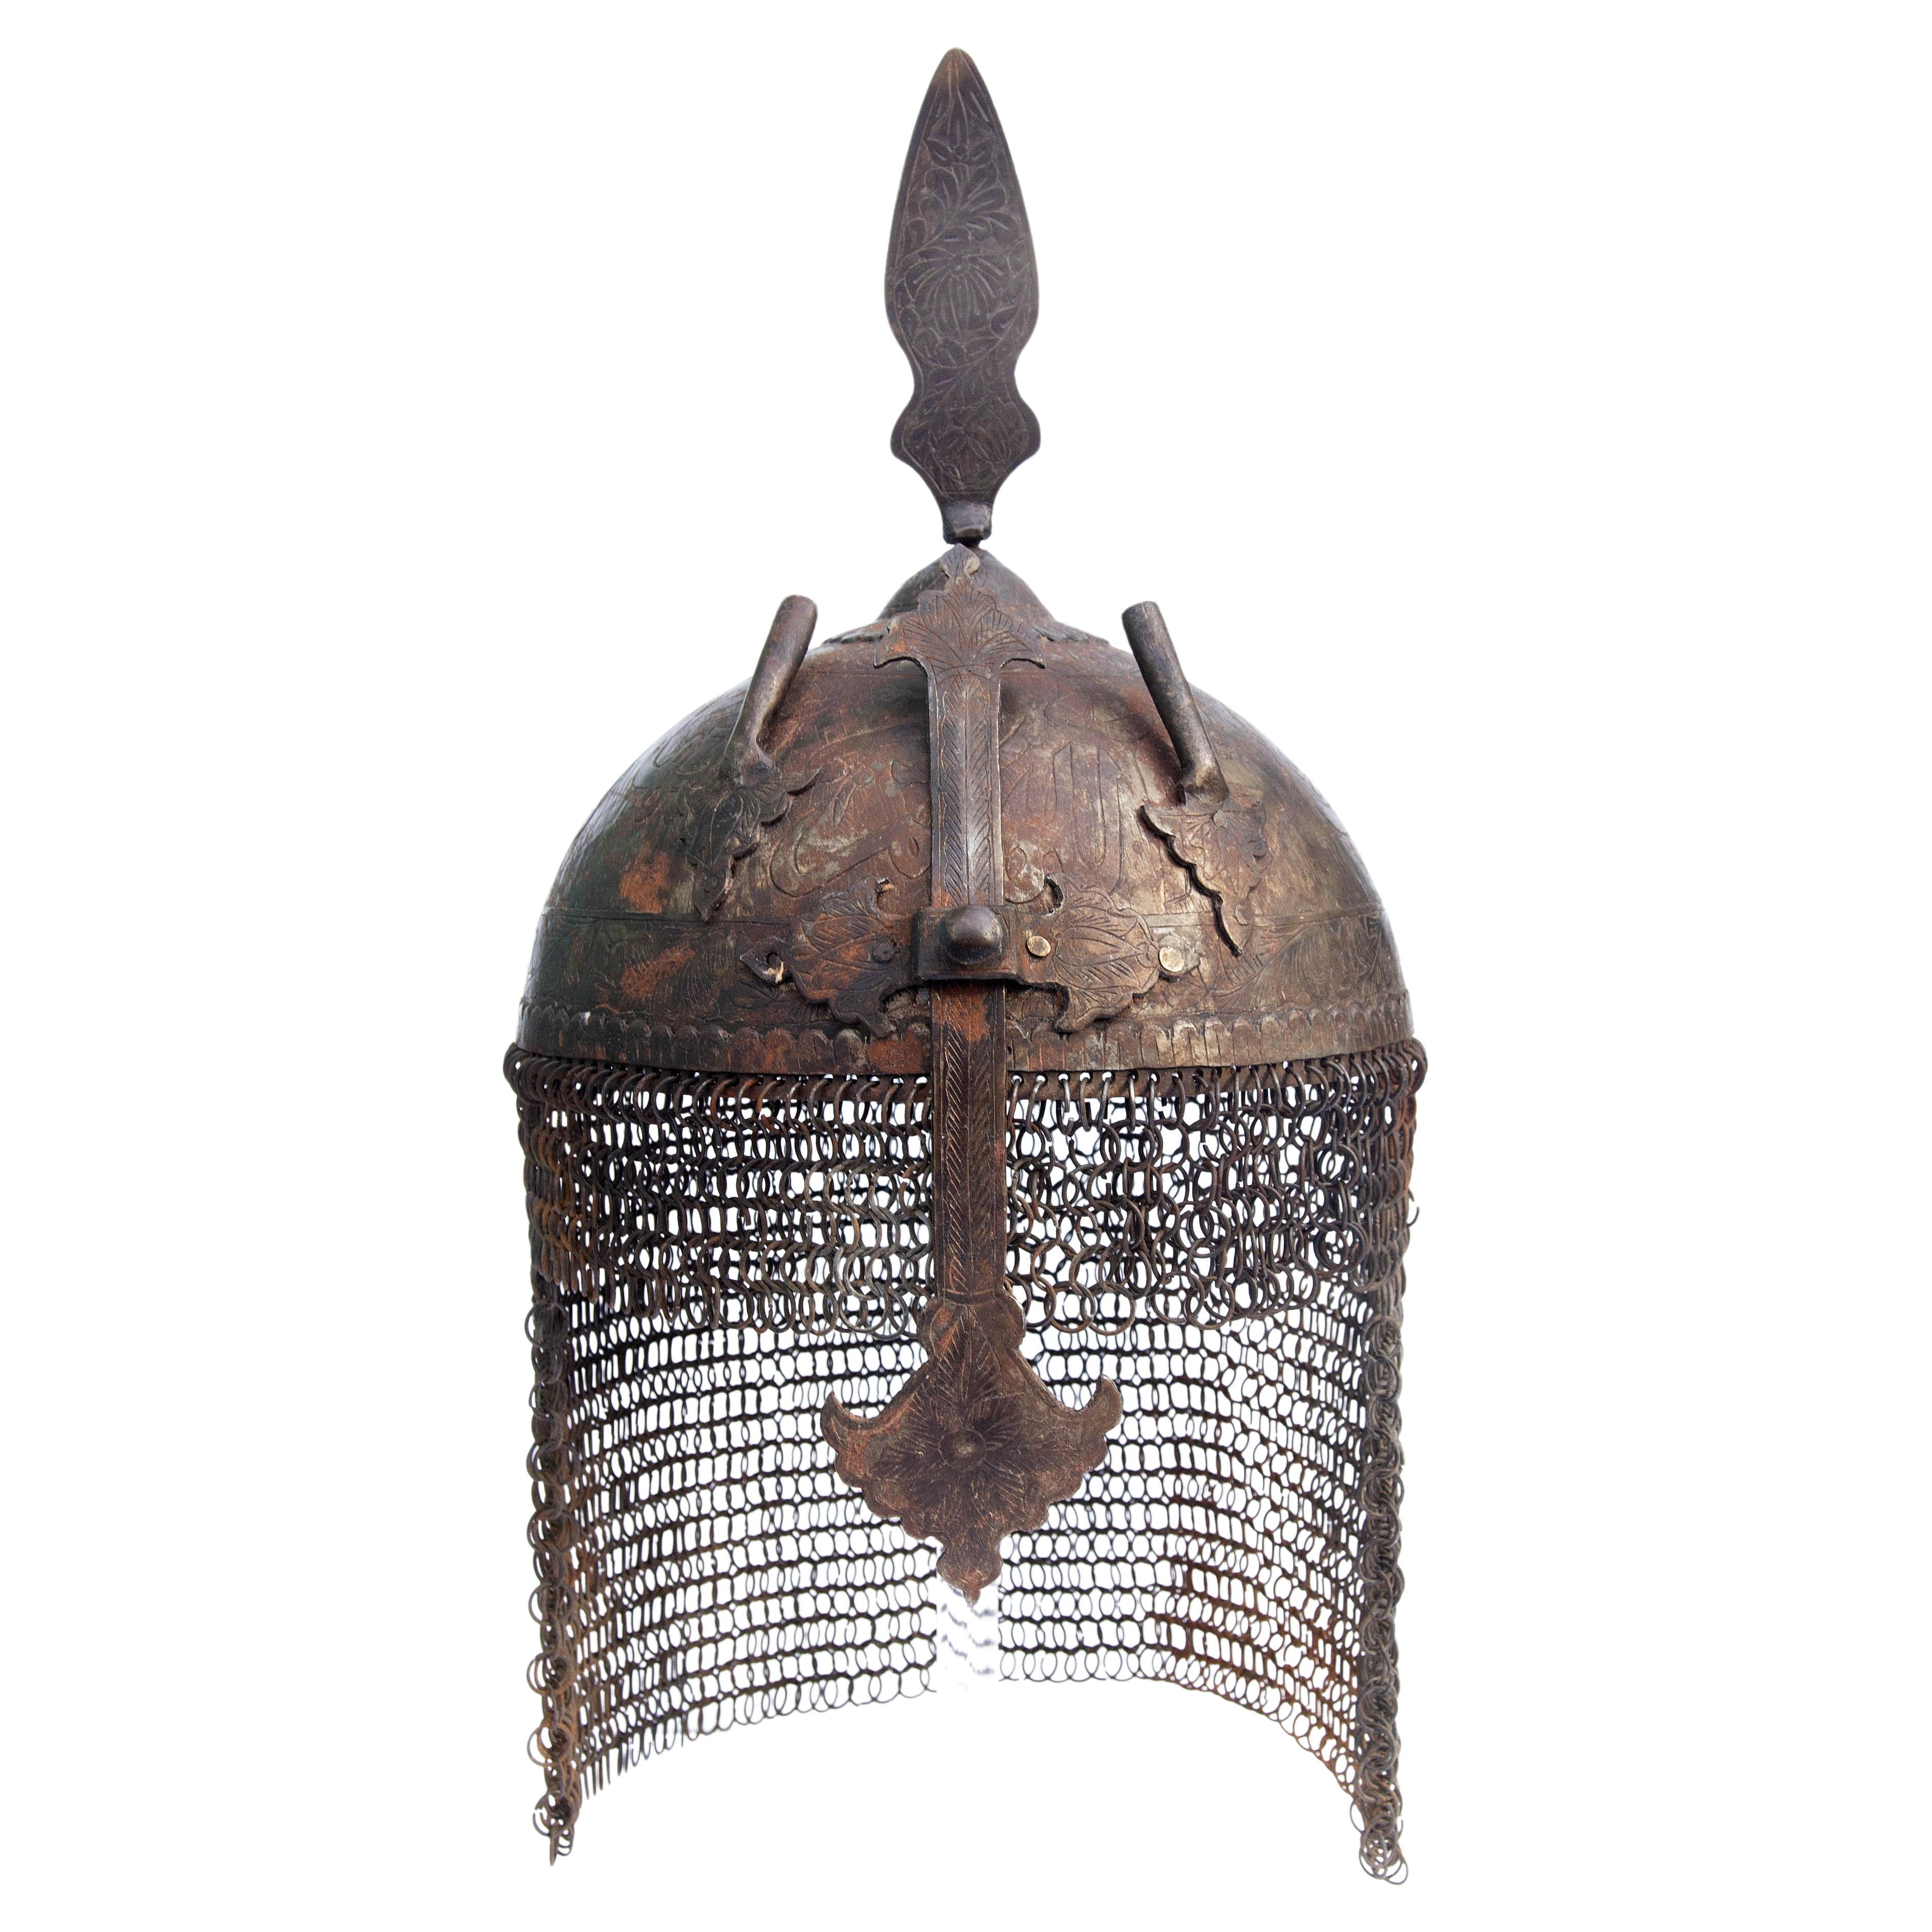 Casque islamique persan en fer avec cotte de mailles. Gravé de symboles arabes en vente